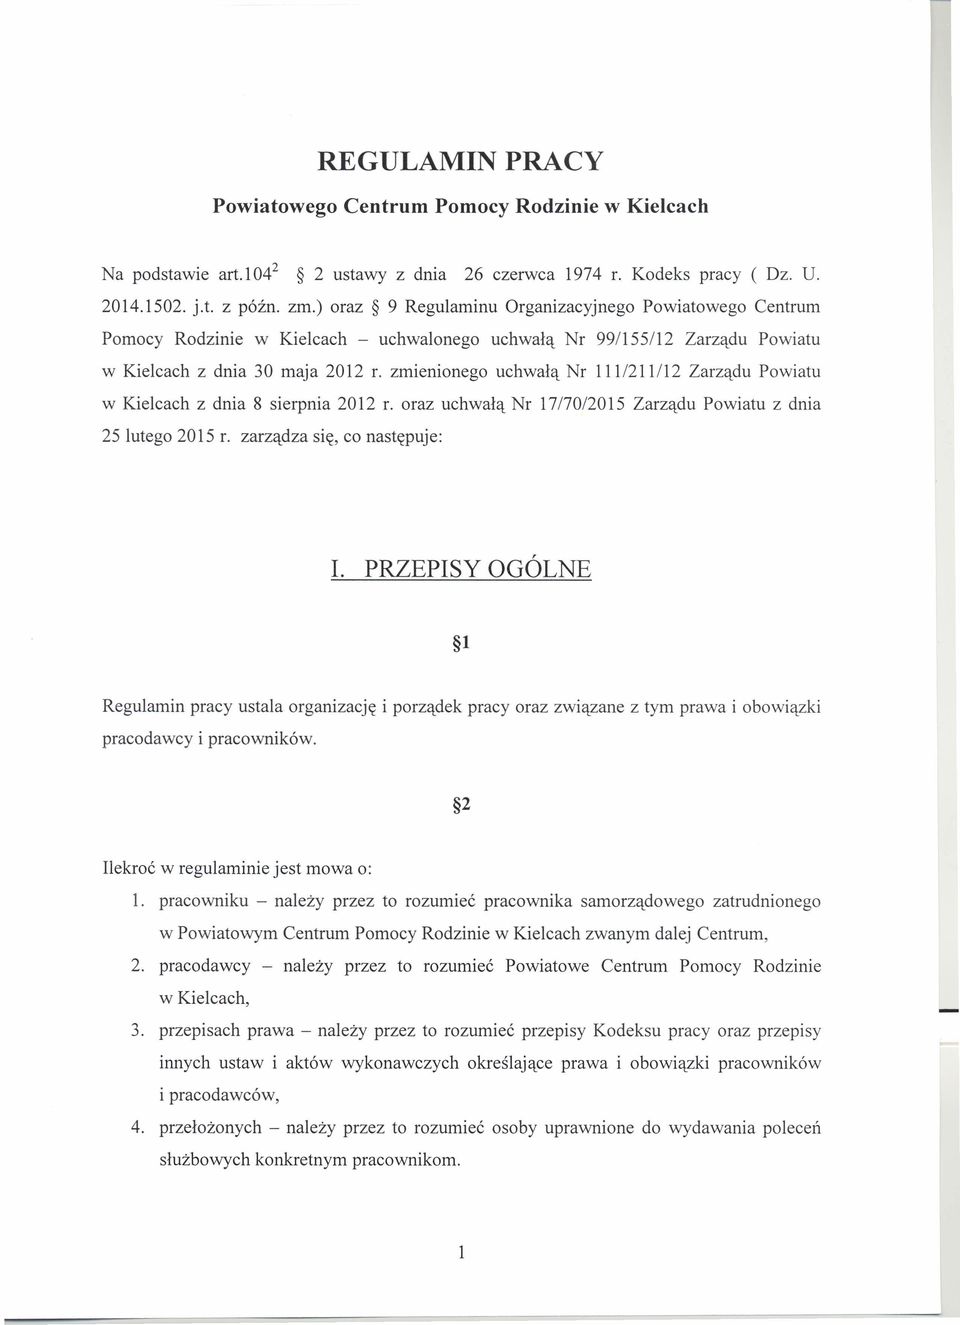 zmienionego uchwałą Nr 111/211/12 Zarządu Powiatu w Kielcach z dnia 8 sierpnia 2012 r. oraz uchwałą Nr 1717012015 Zarządu Powiatu z dnia 25 lutego 2015 r.